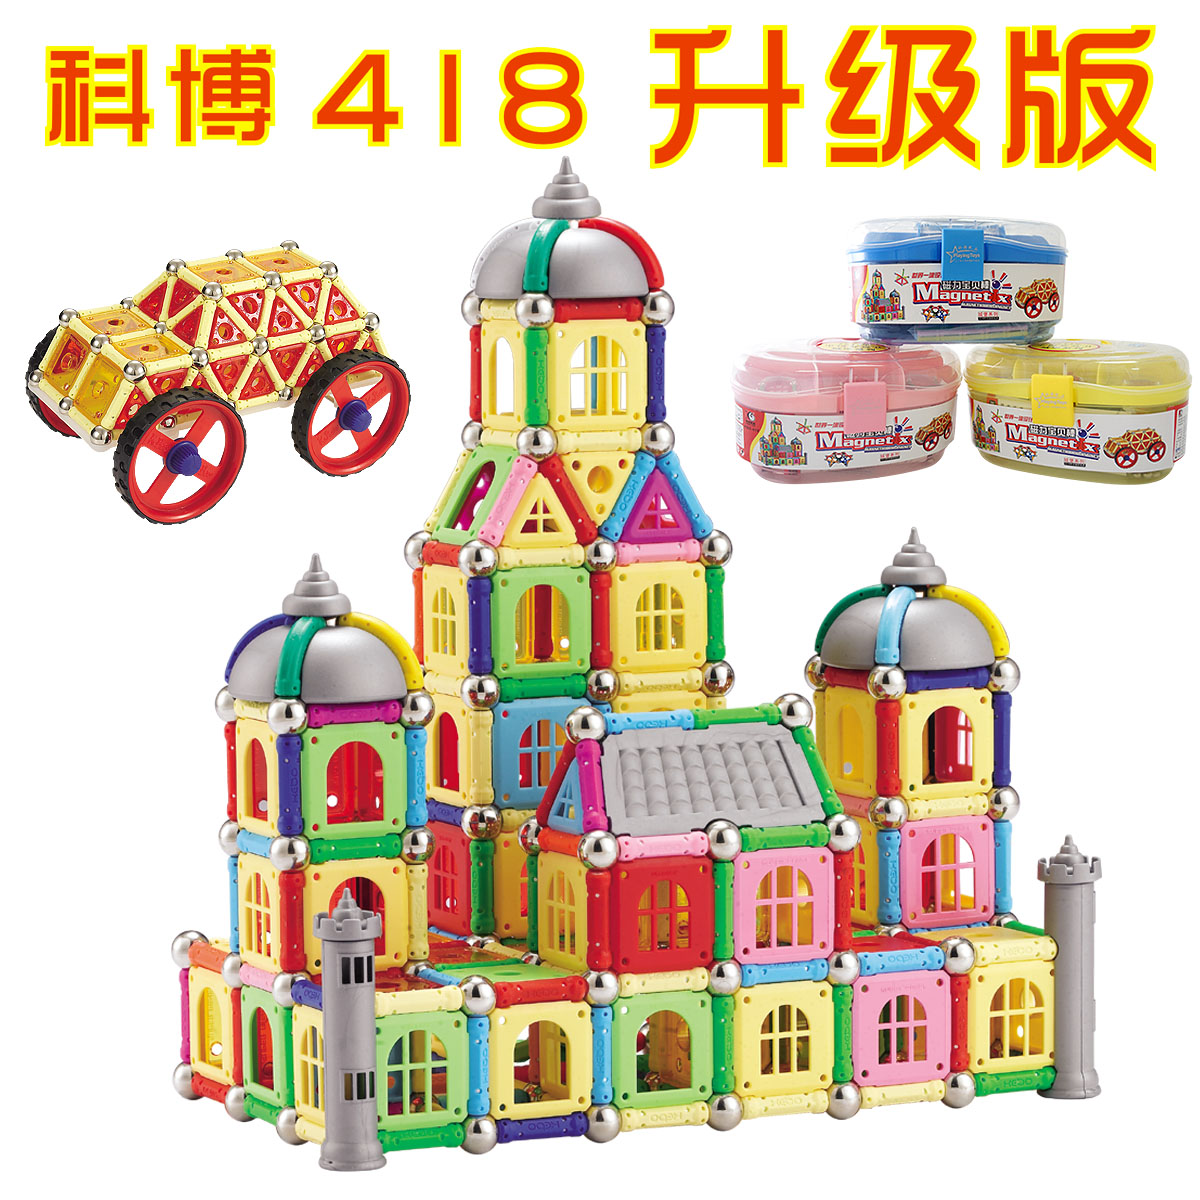 正品磁力棒玩具 科博磁力棒桶装418件城堡系列磁性积木送好礼包邮